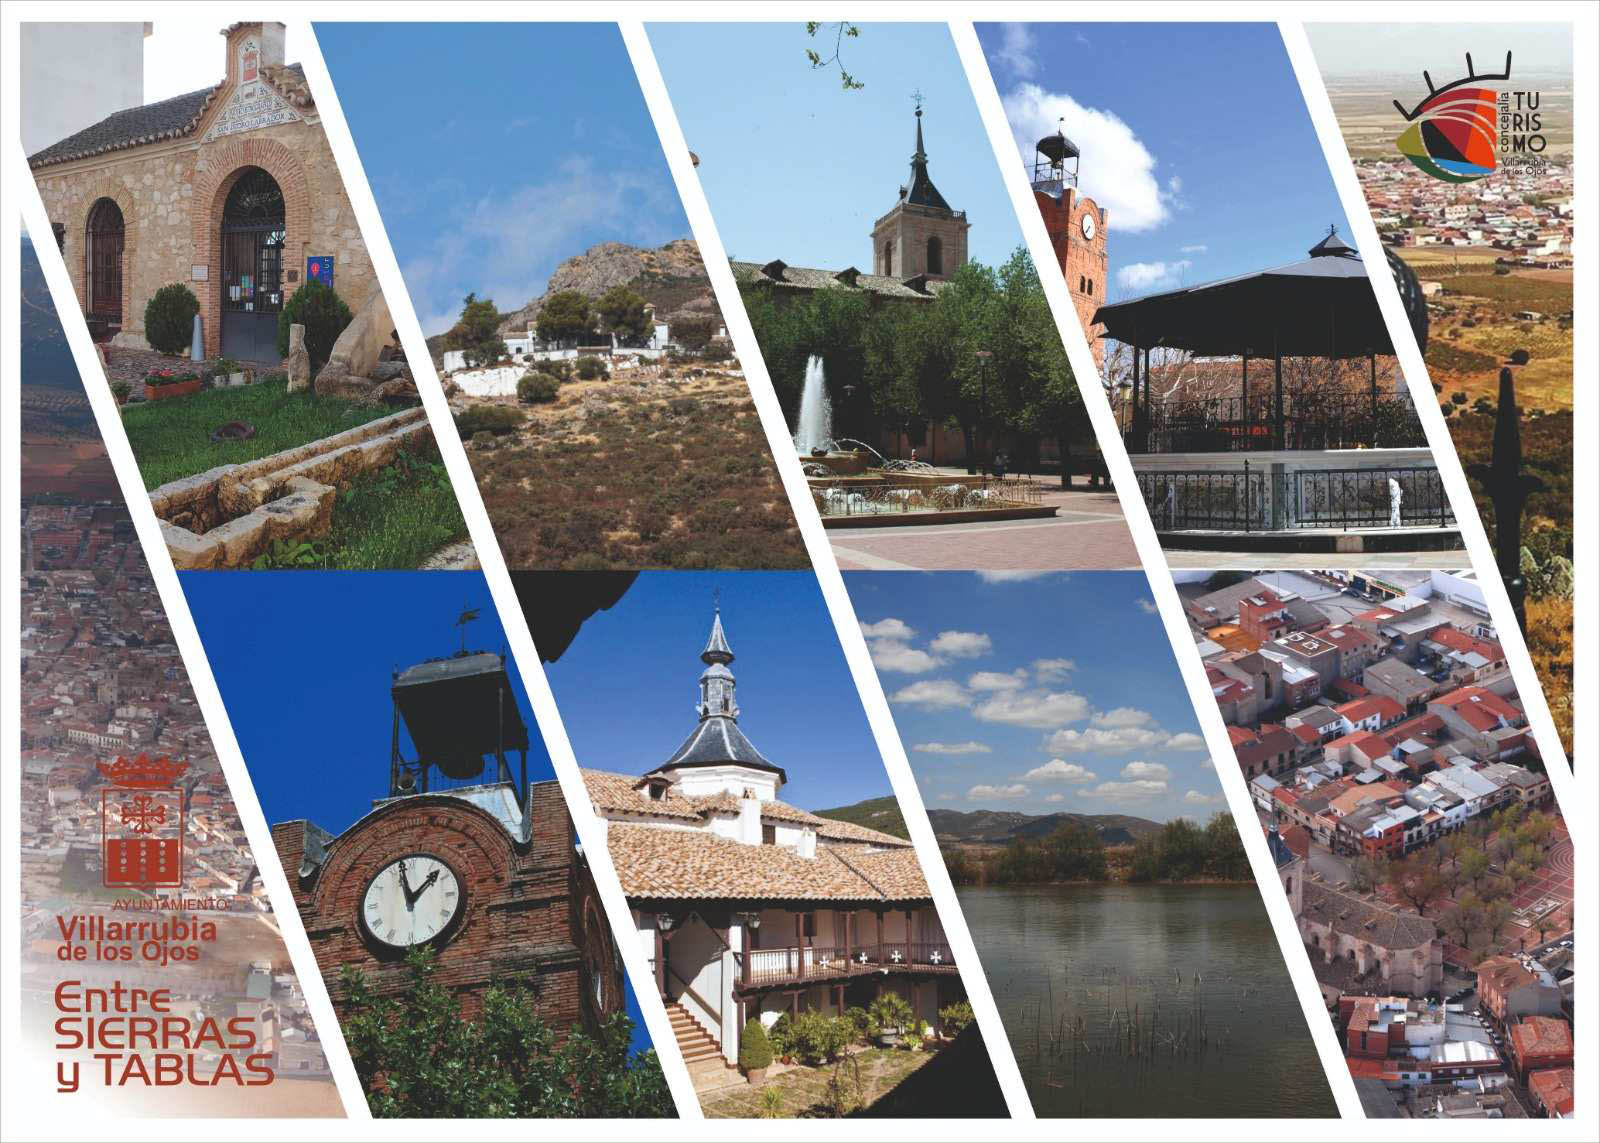 Turismo de Villarrubia de los Ojos reparte carteles con los lugares más emblemáticos entre las dependencias municipales y negocios hosteleros